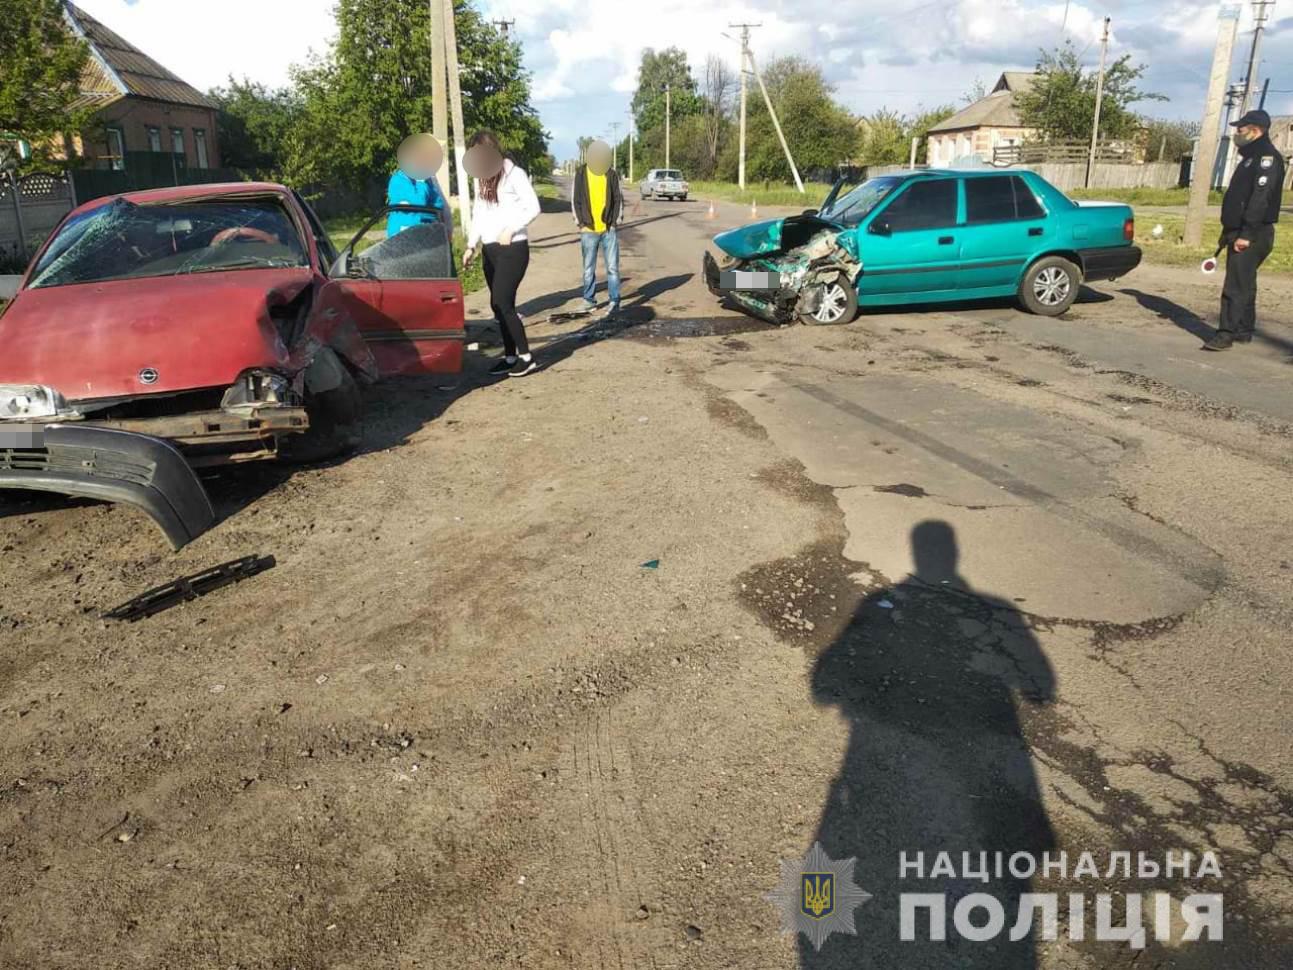 Авария в Печенегах: двое пострадавших (фото)